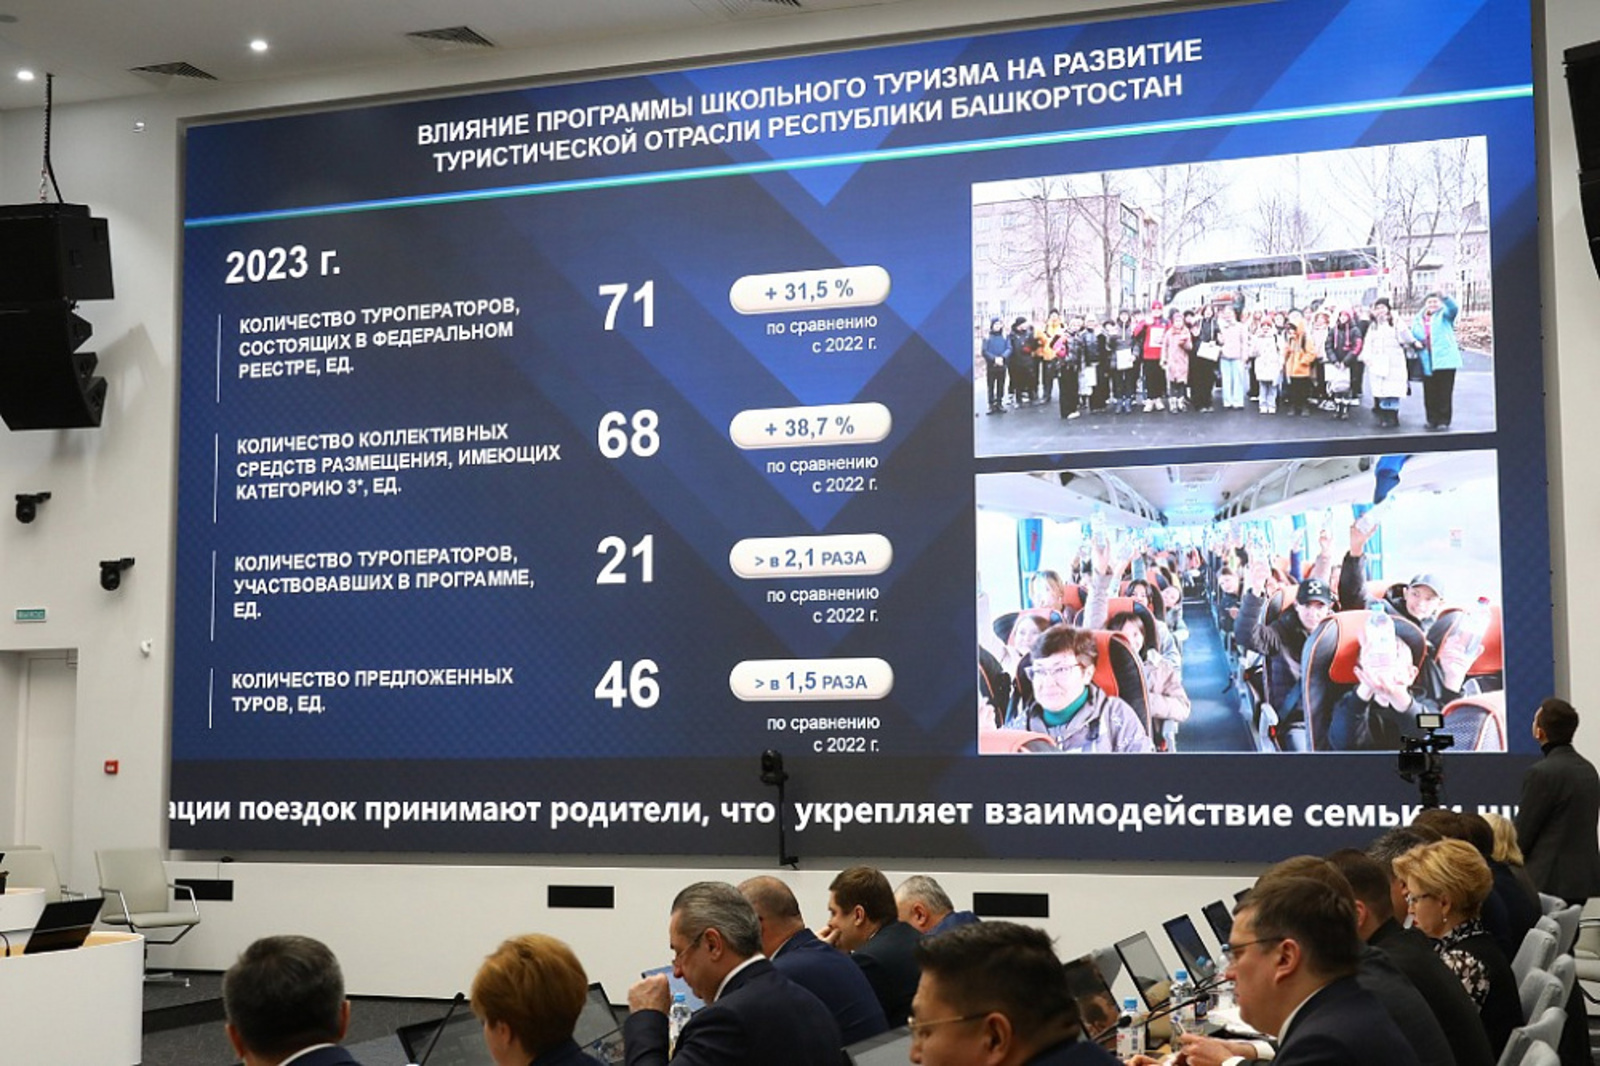 Более 50 тысяч учащихся Башкортостана стали участниками федеральной программы «Школьный туризм»